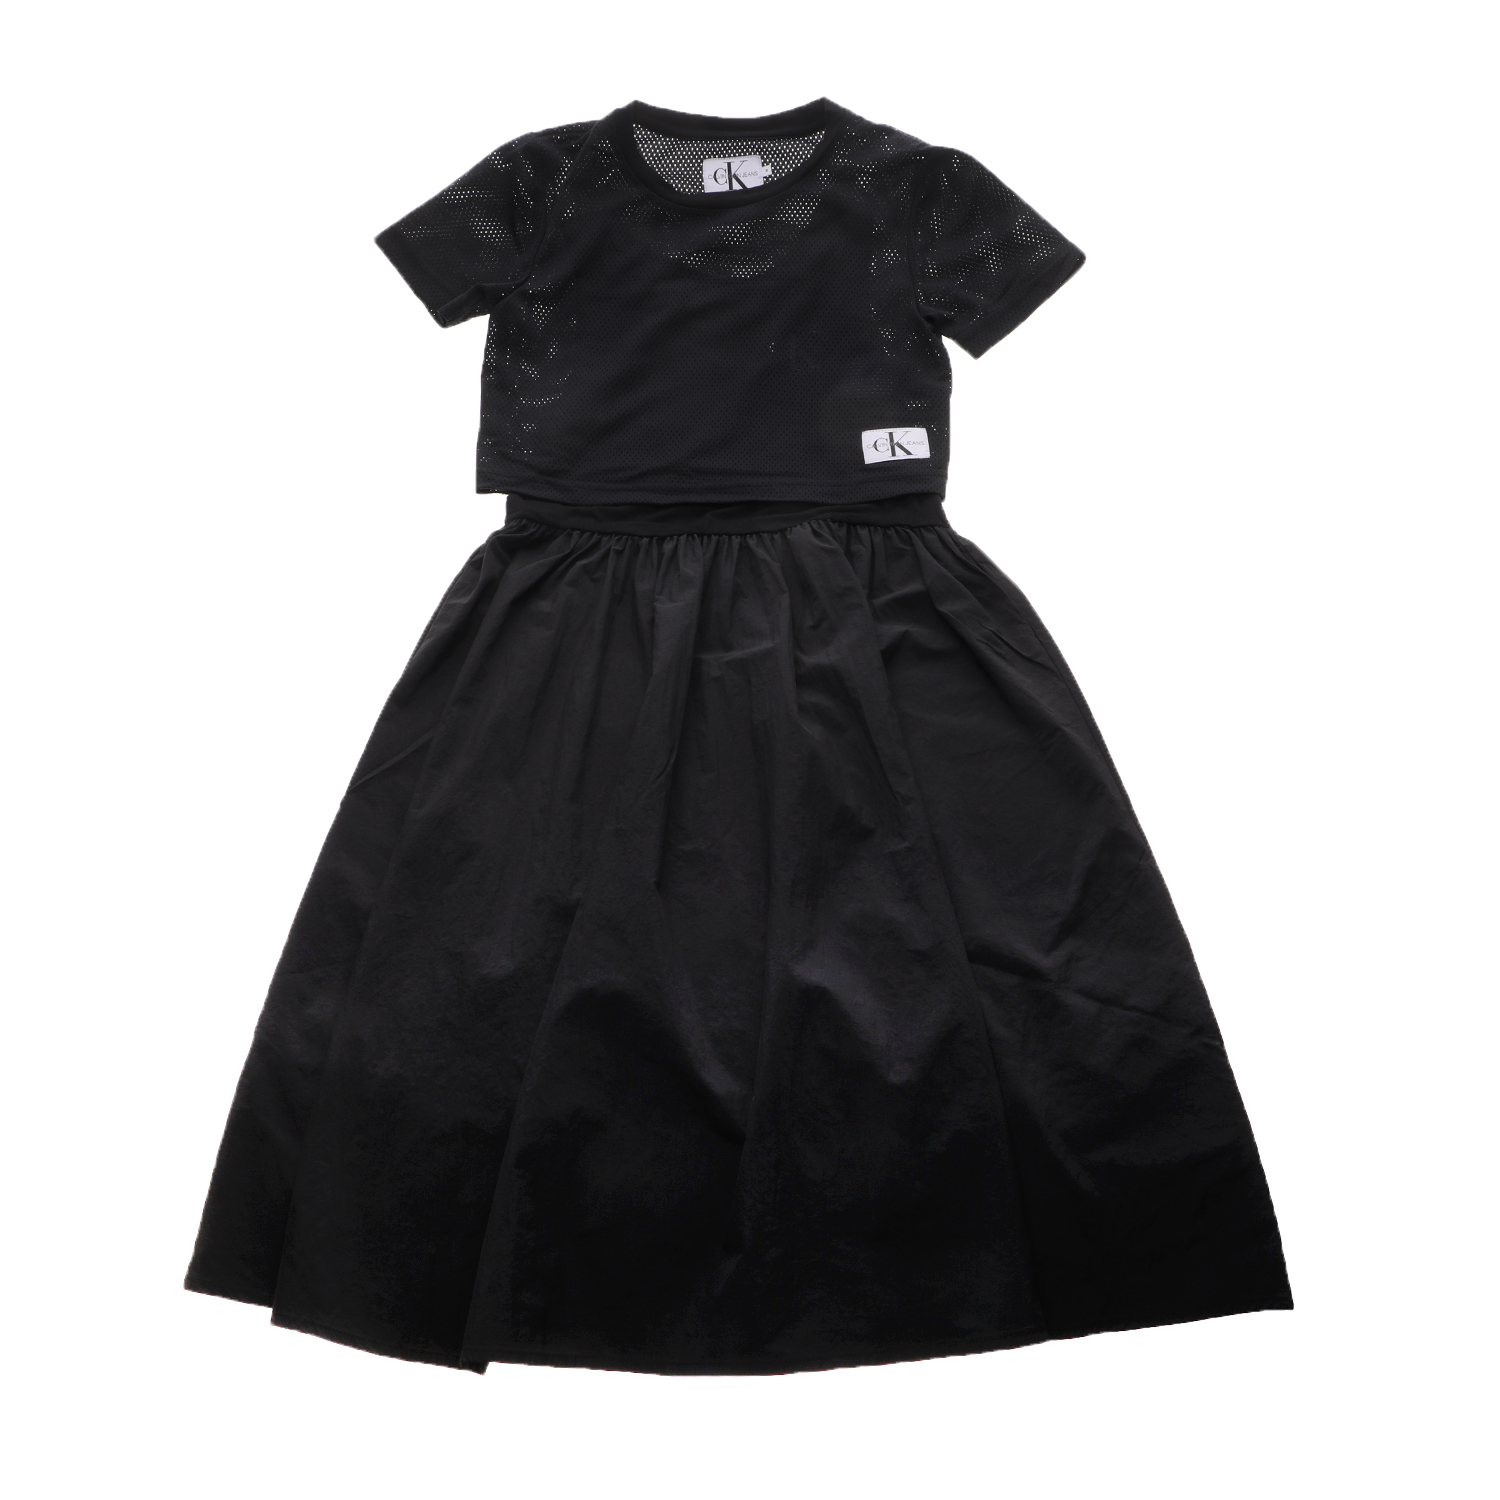 Παιδικά/Girls/Ρούχα/Φορέματα Κοντομάνικα-Αμάνικα CALVIN KLEIN JEANS KIDS - Παιδικό midi φόρεμα 2 σε 1 CALVIN KLEIN JEANS KIDS μαύρο